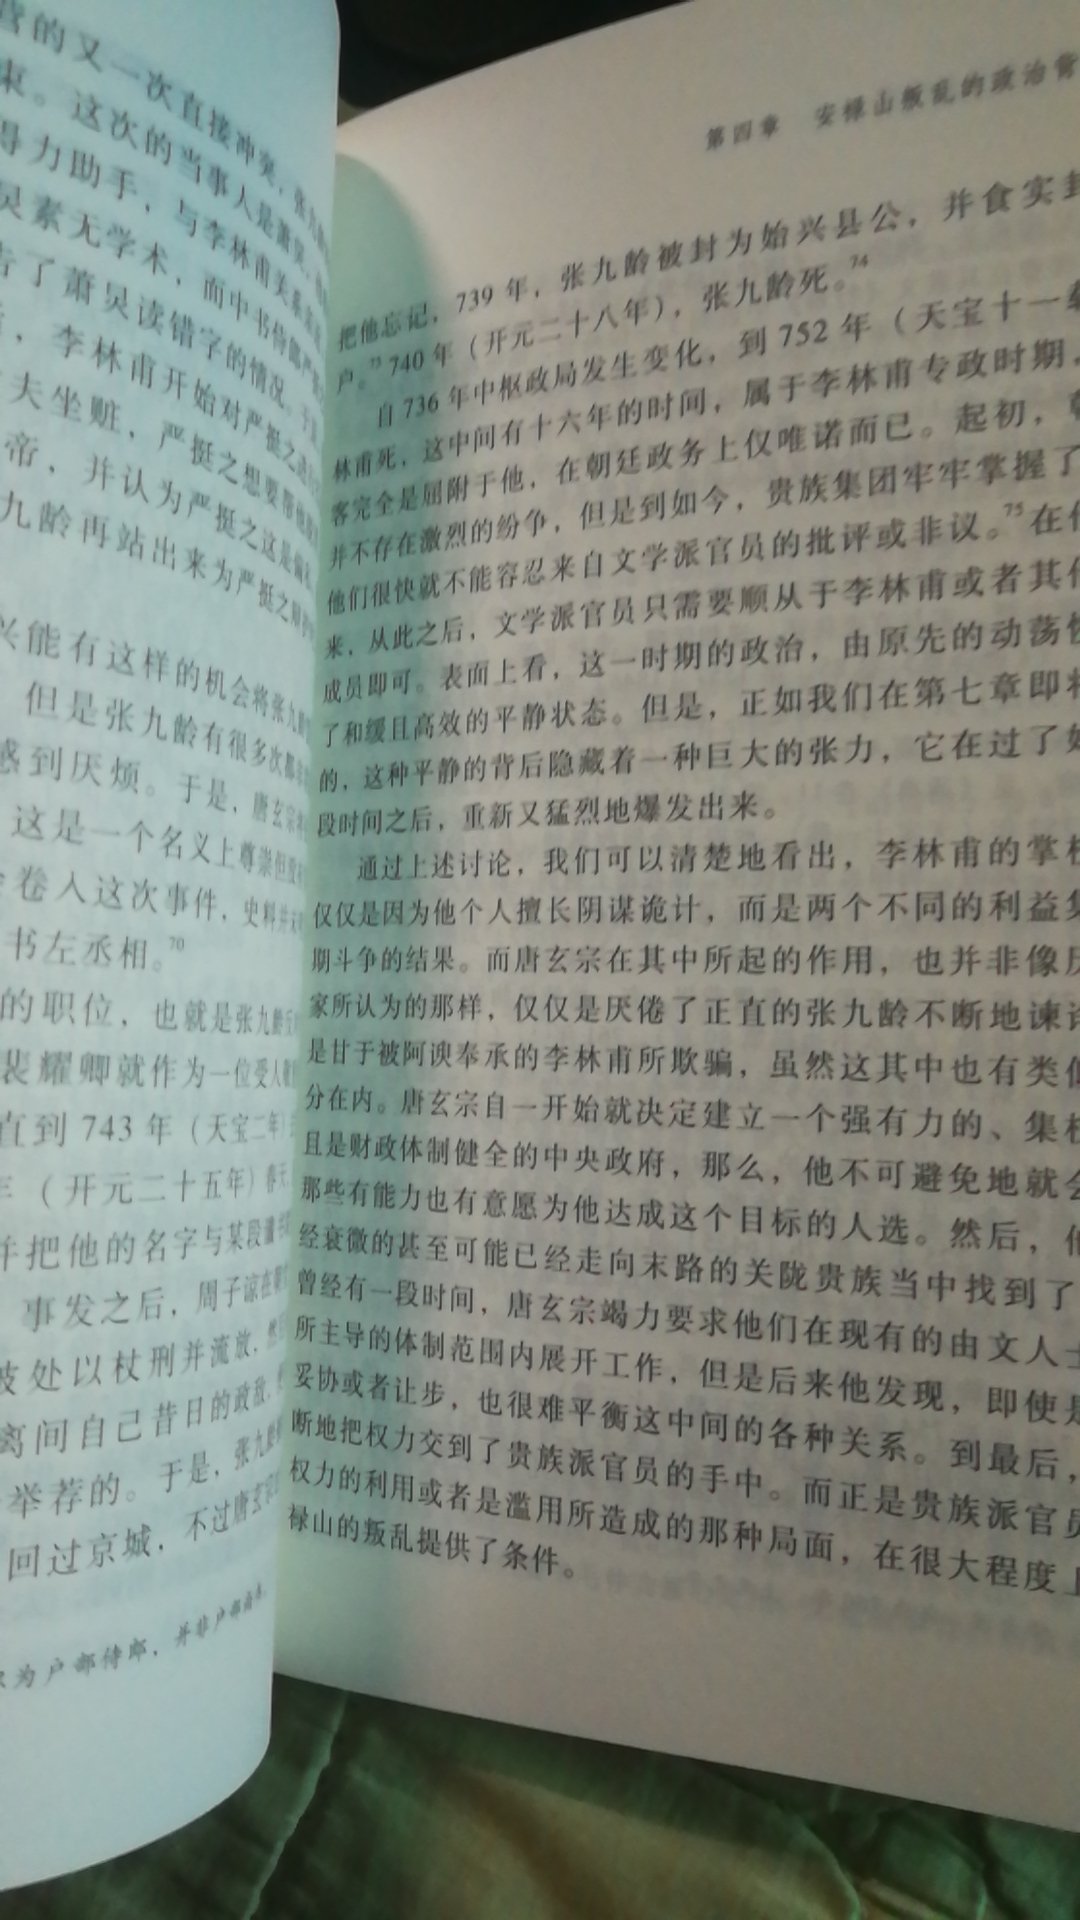 妈的，上当了，我以为是中华书局呢，没想到是中西式厨具#儿，纸质超差呀